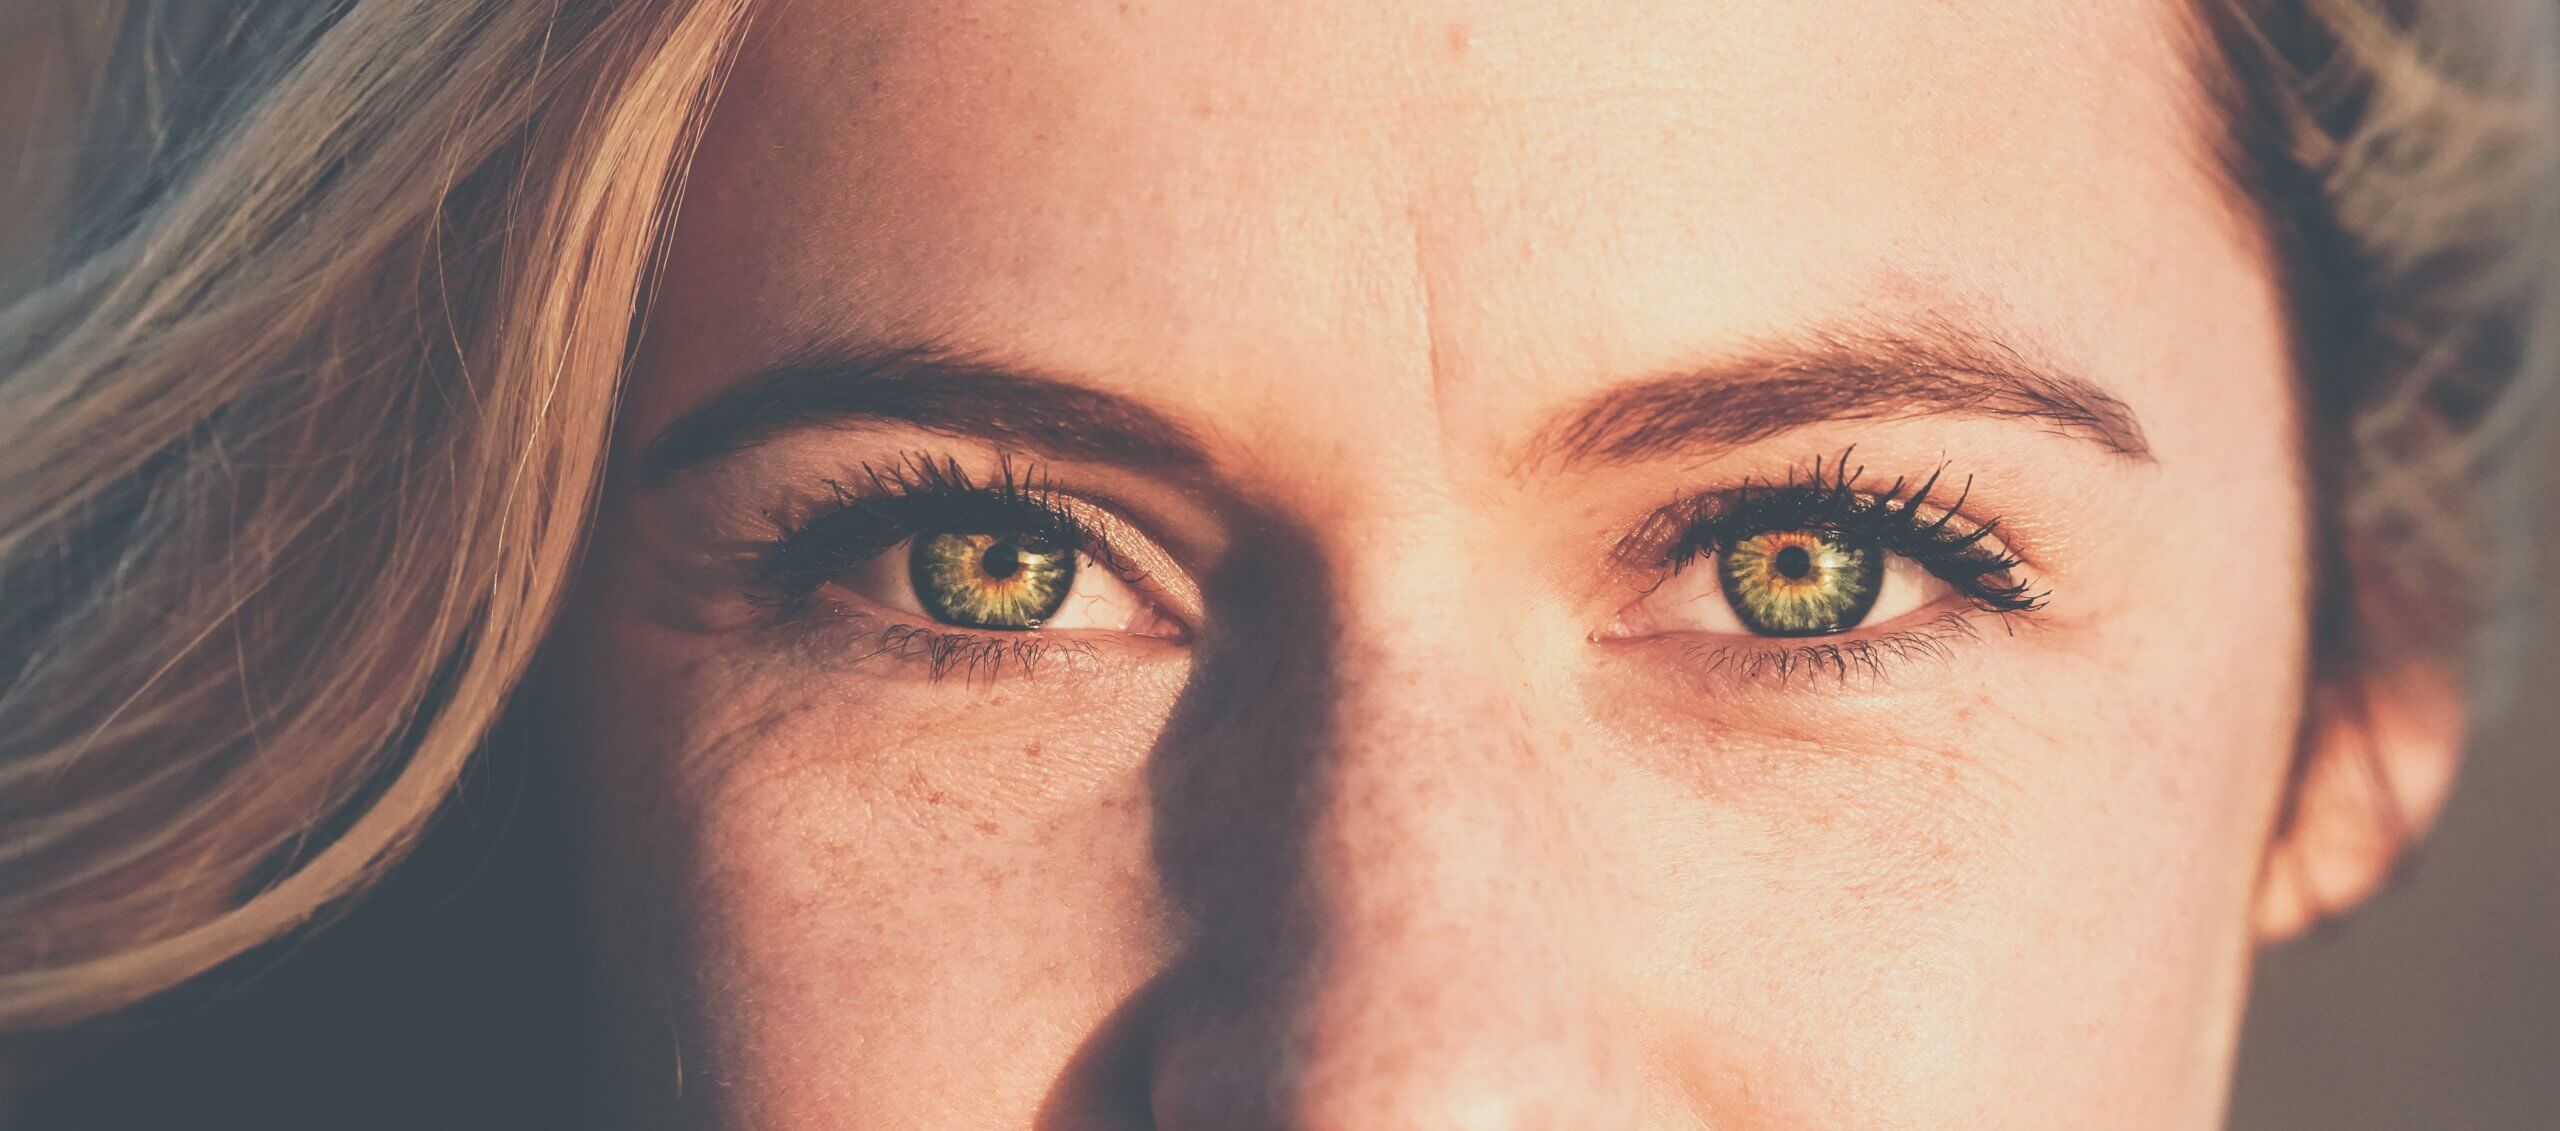 Почему глаза бывают разного цвета. Цвет глаз может незначительно меняться из-за разных факторов. Источник фото: happylook.ru. Фото.